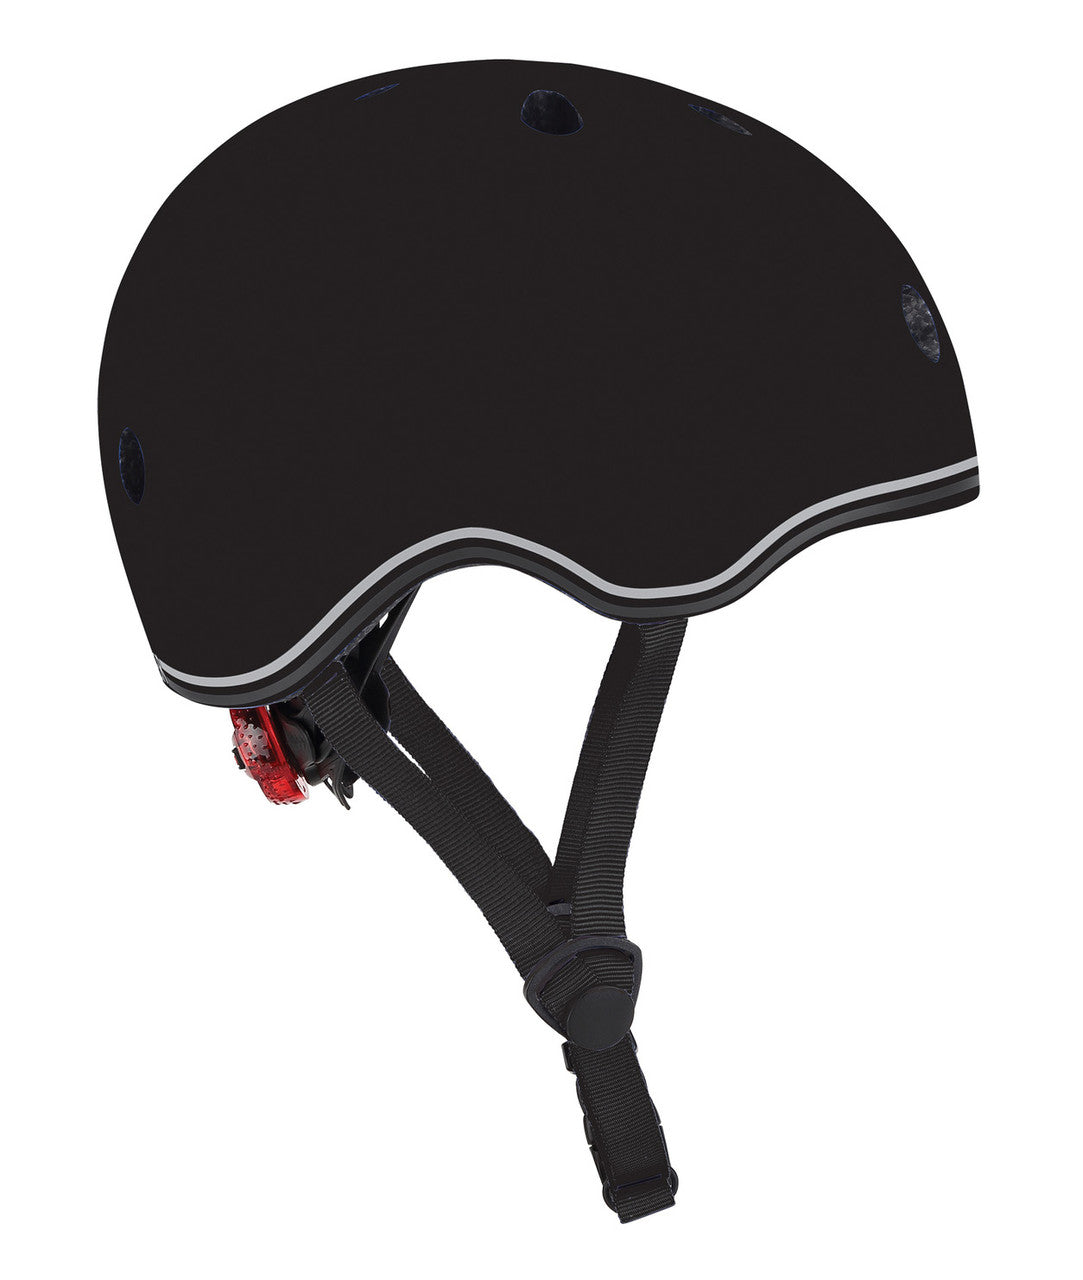 Globber Helmet - Black - Small (51-55cm)